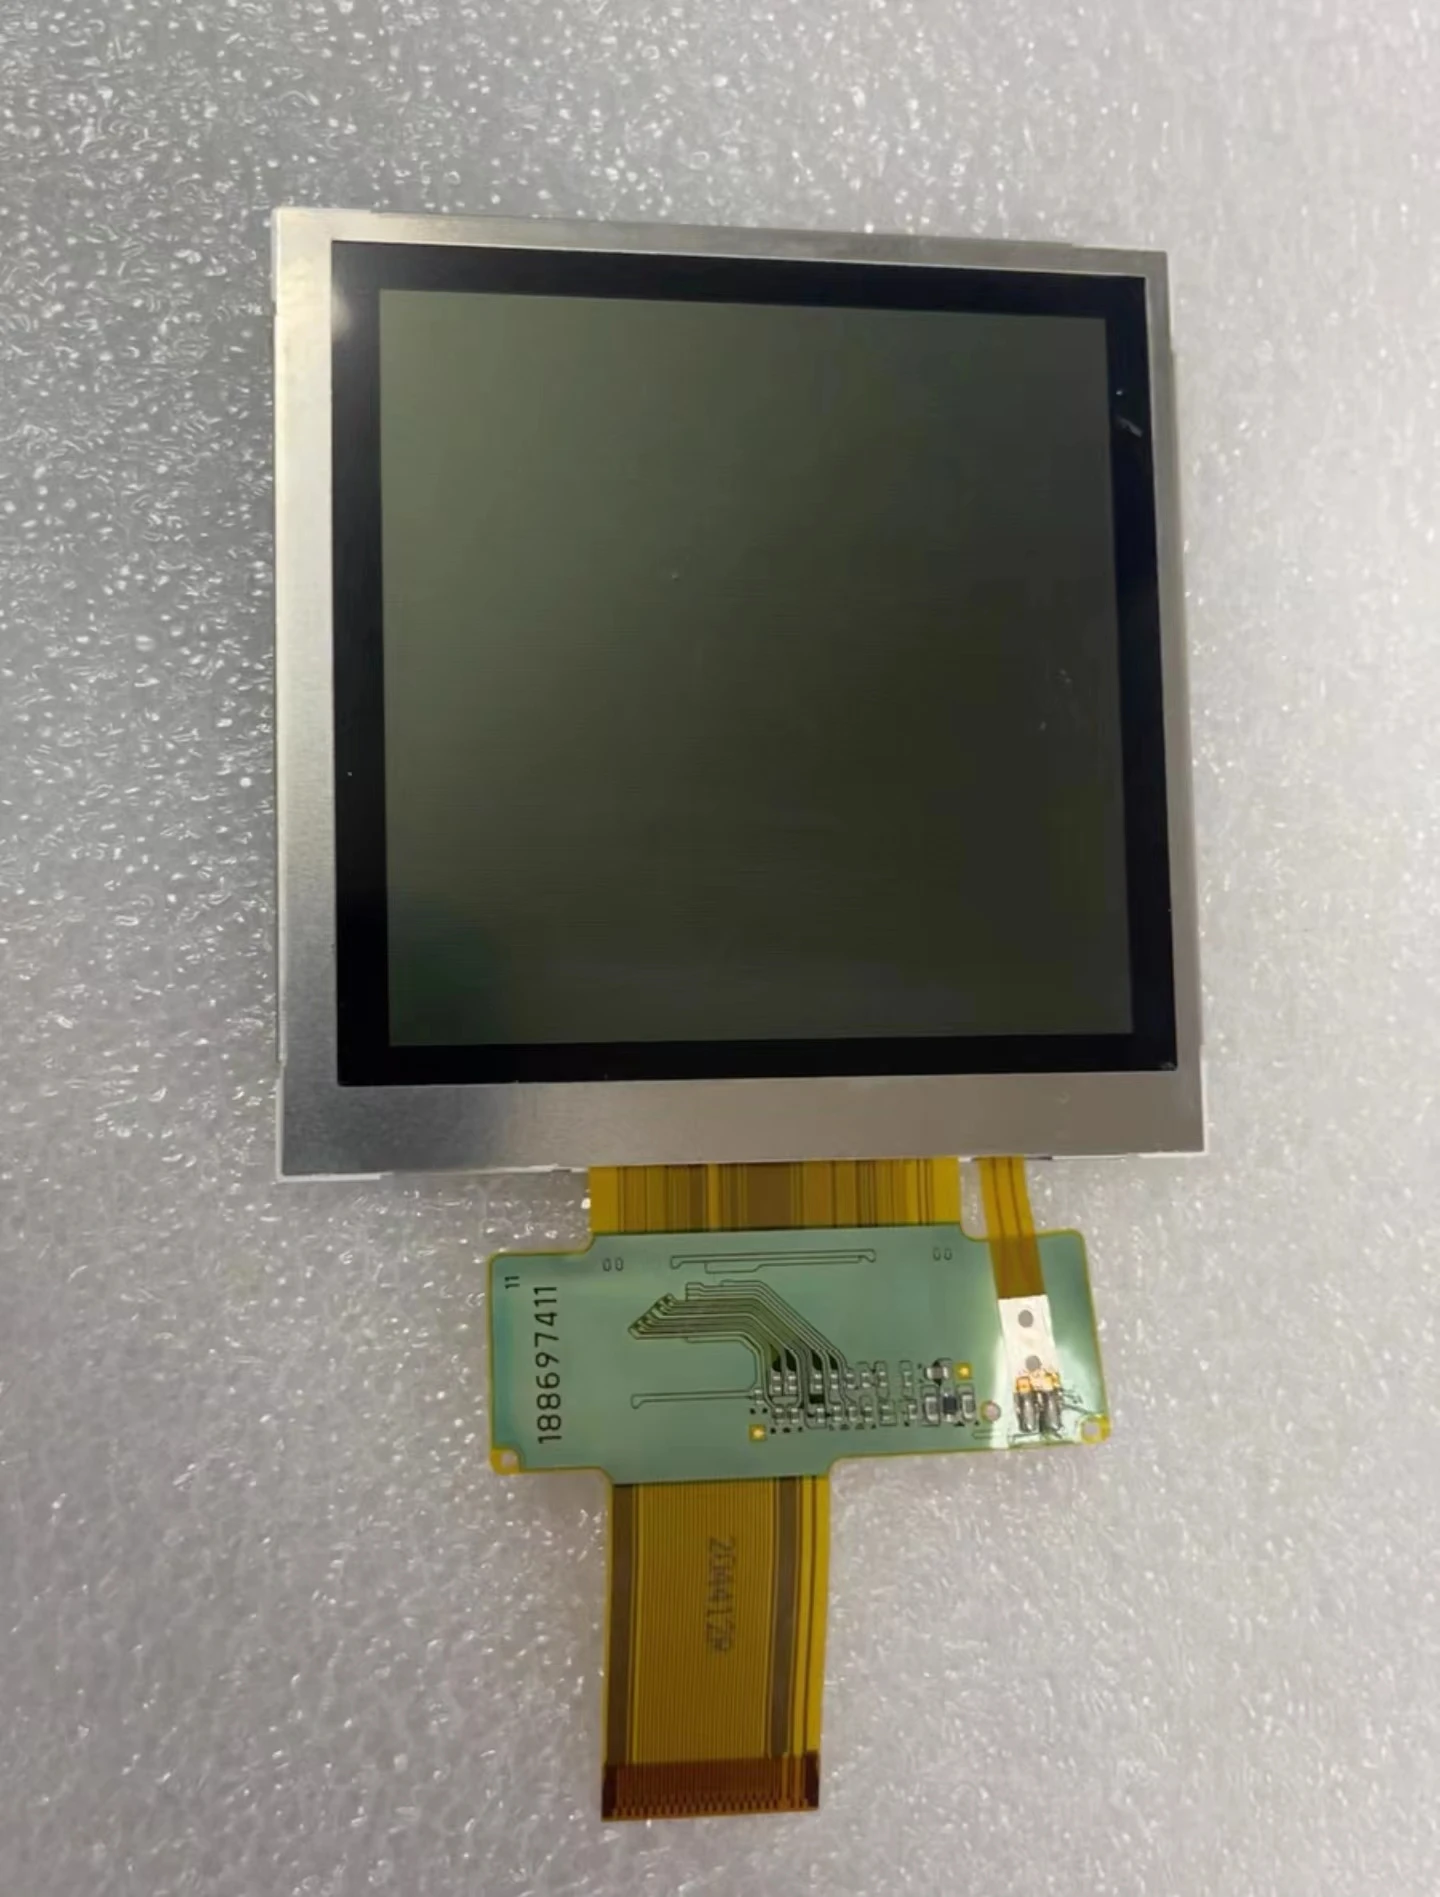 המקורי על זברה מוטורולה MC3190 LCD מסך תצוגה, מתאים מסך LCD תיקון והחלפה, ללא משלוח - 0